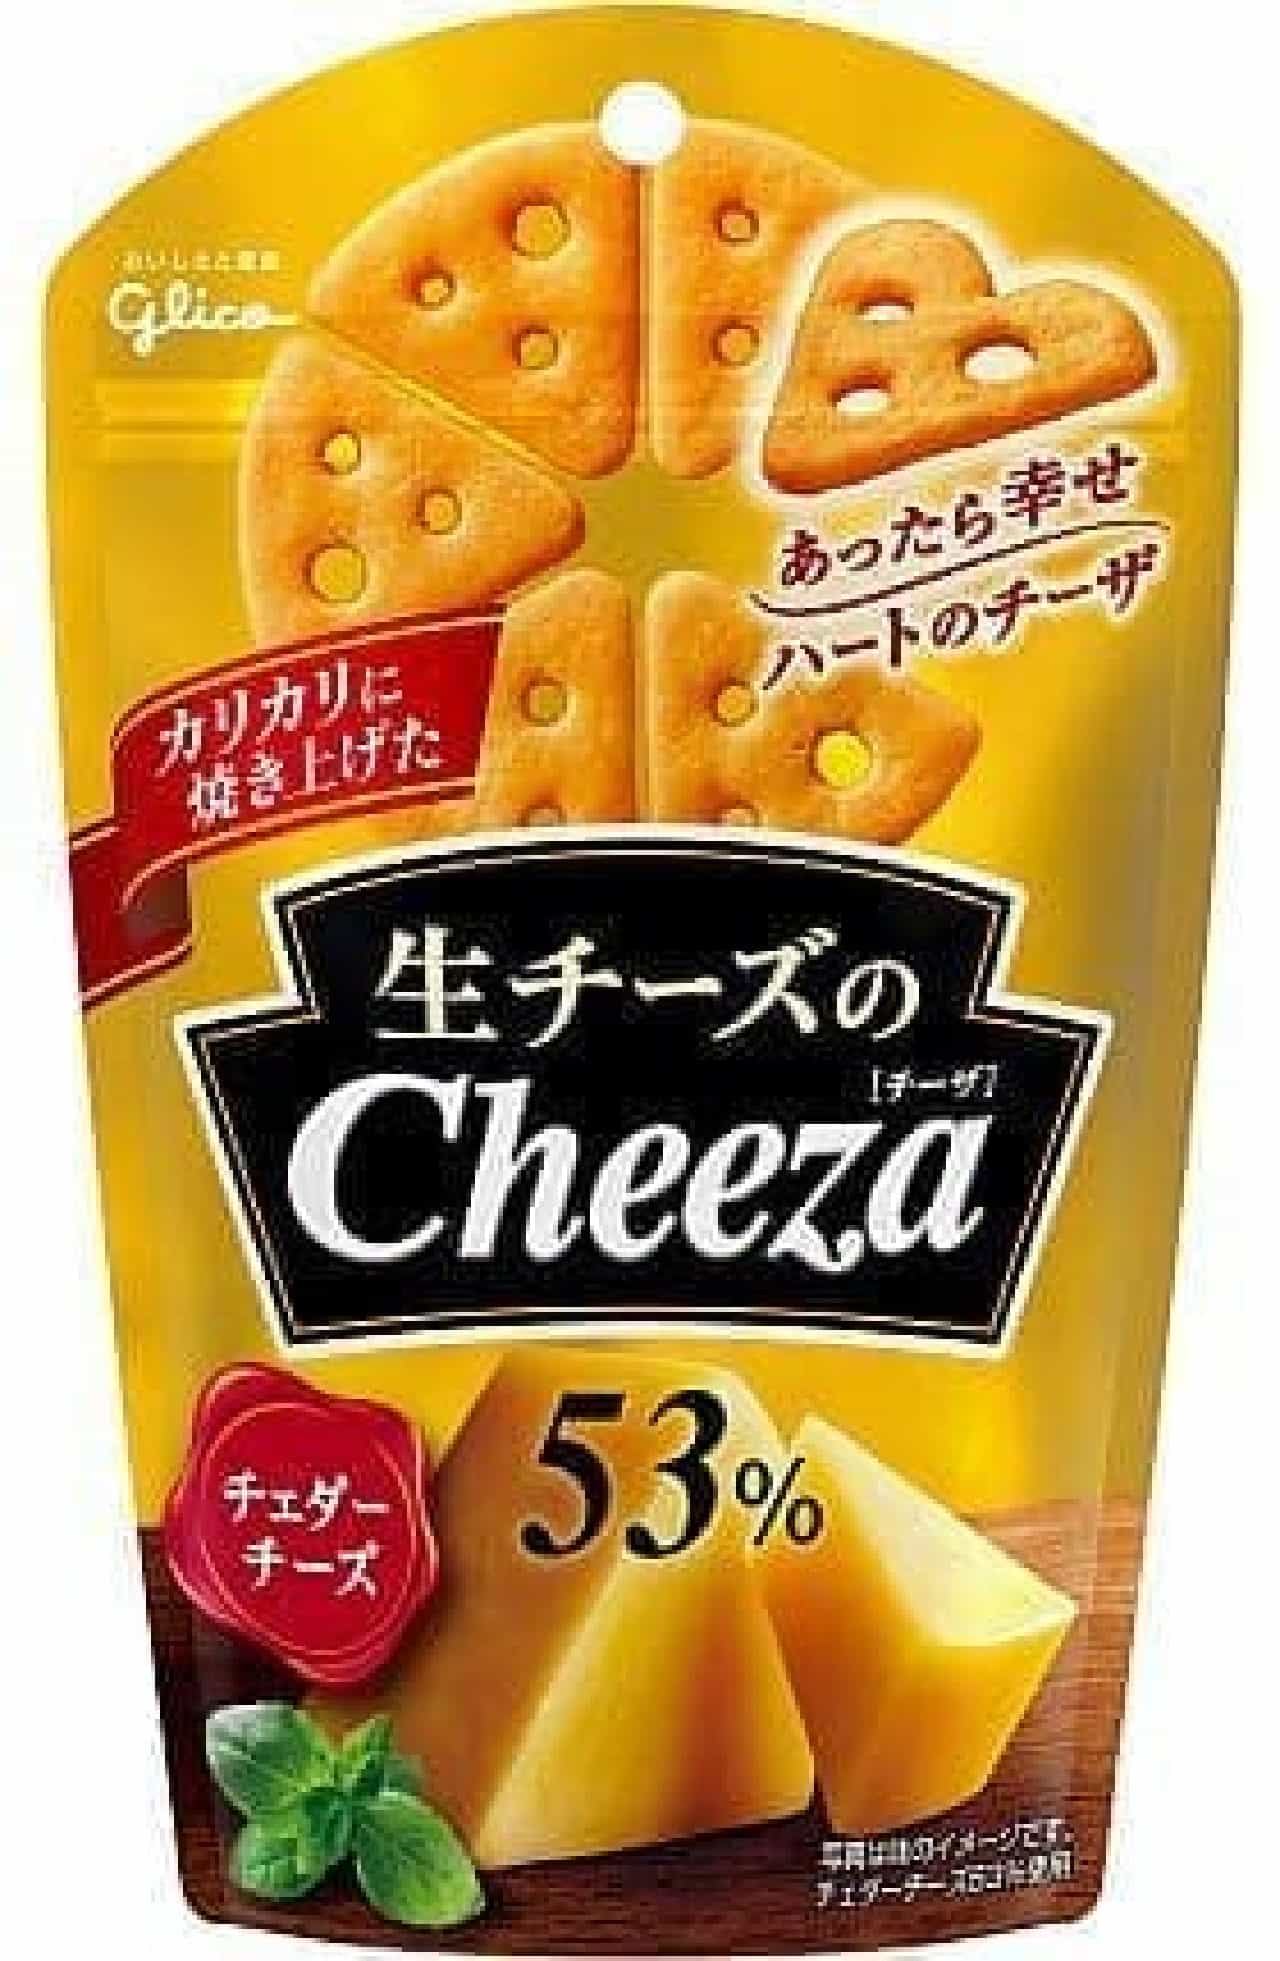 江崎グリコ「生チーズのチーザ」